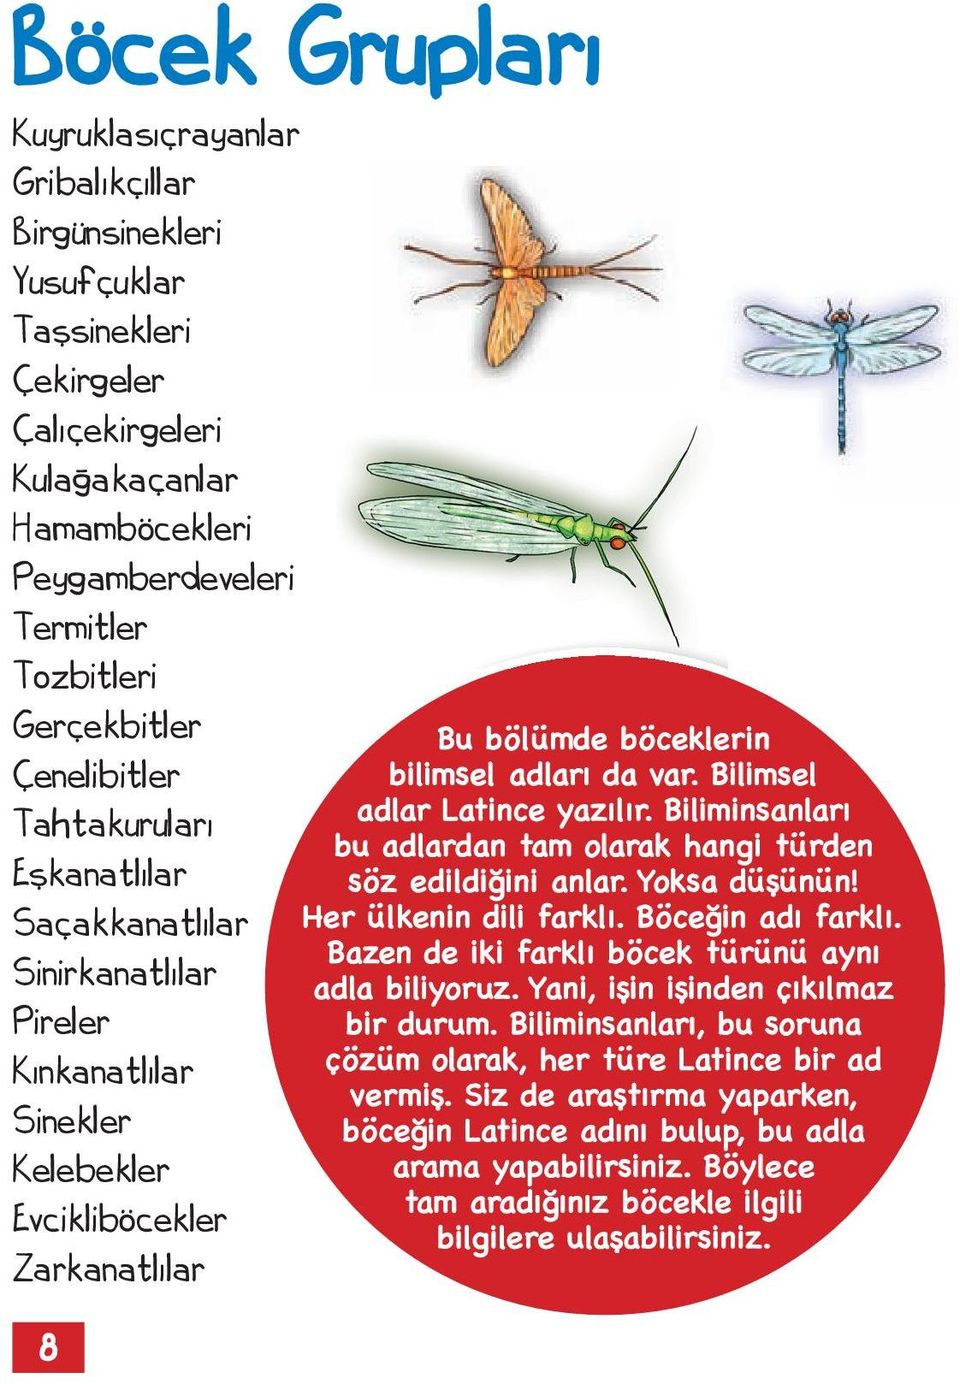 Bilimsel adlar Latince yazılır. Biliminsanları bu adlardan tam olarak hangi türden söz edildiğini anlar. Yoksa düşünün! Her ülkenin dili farklı. Böceğin adı farklı.